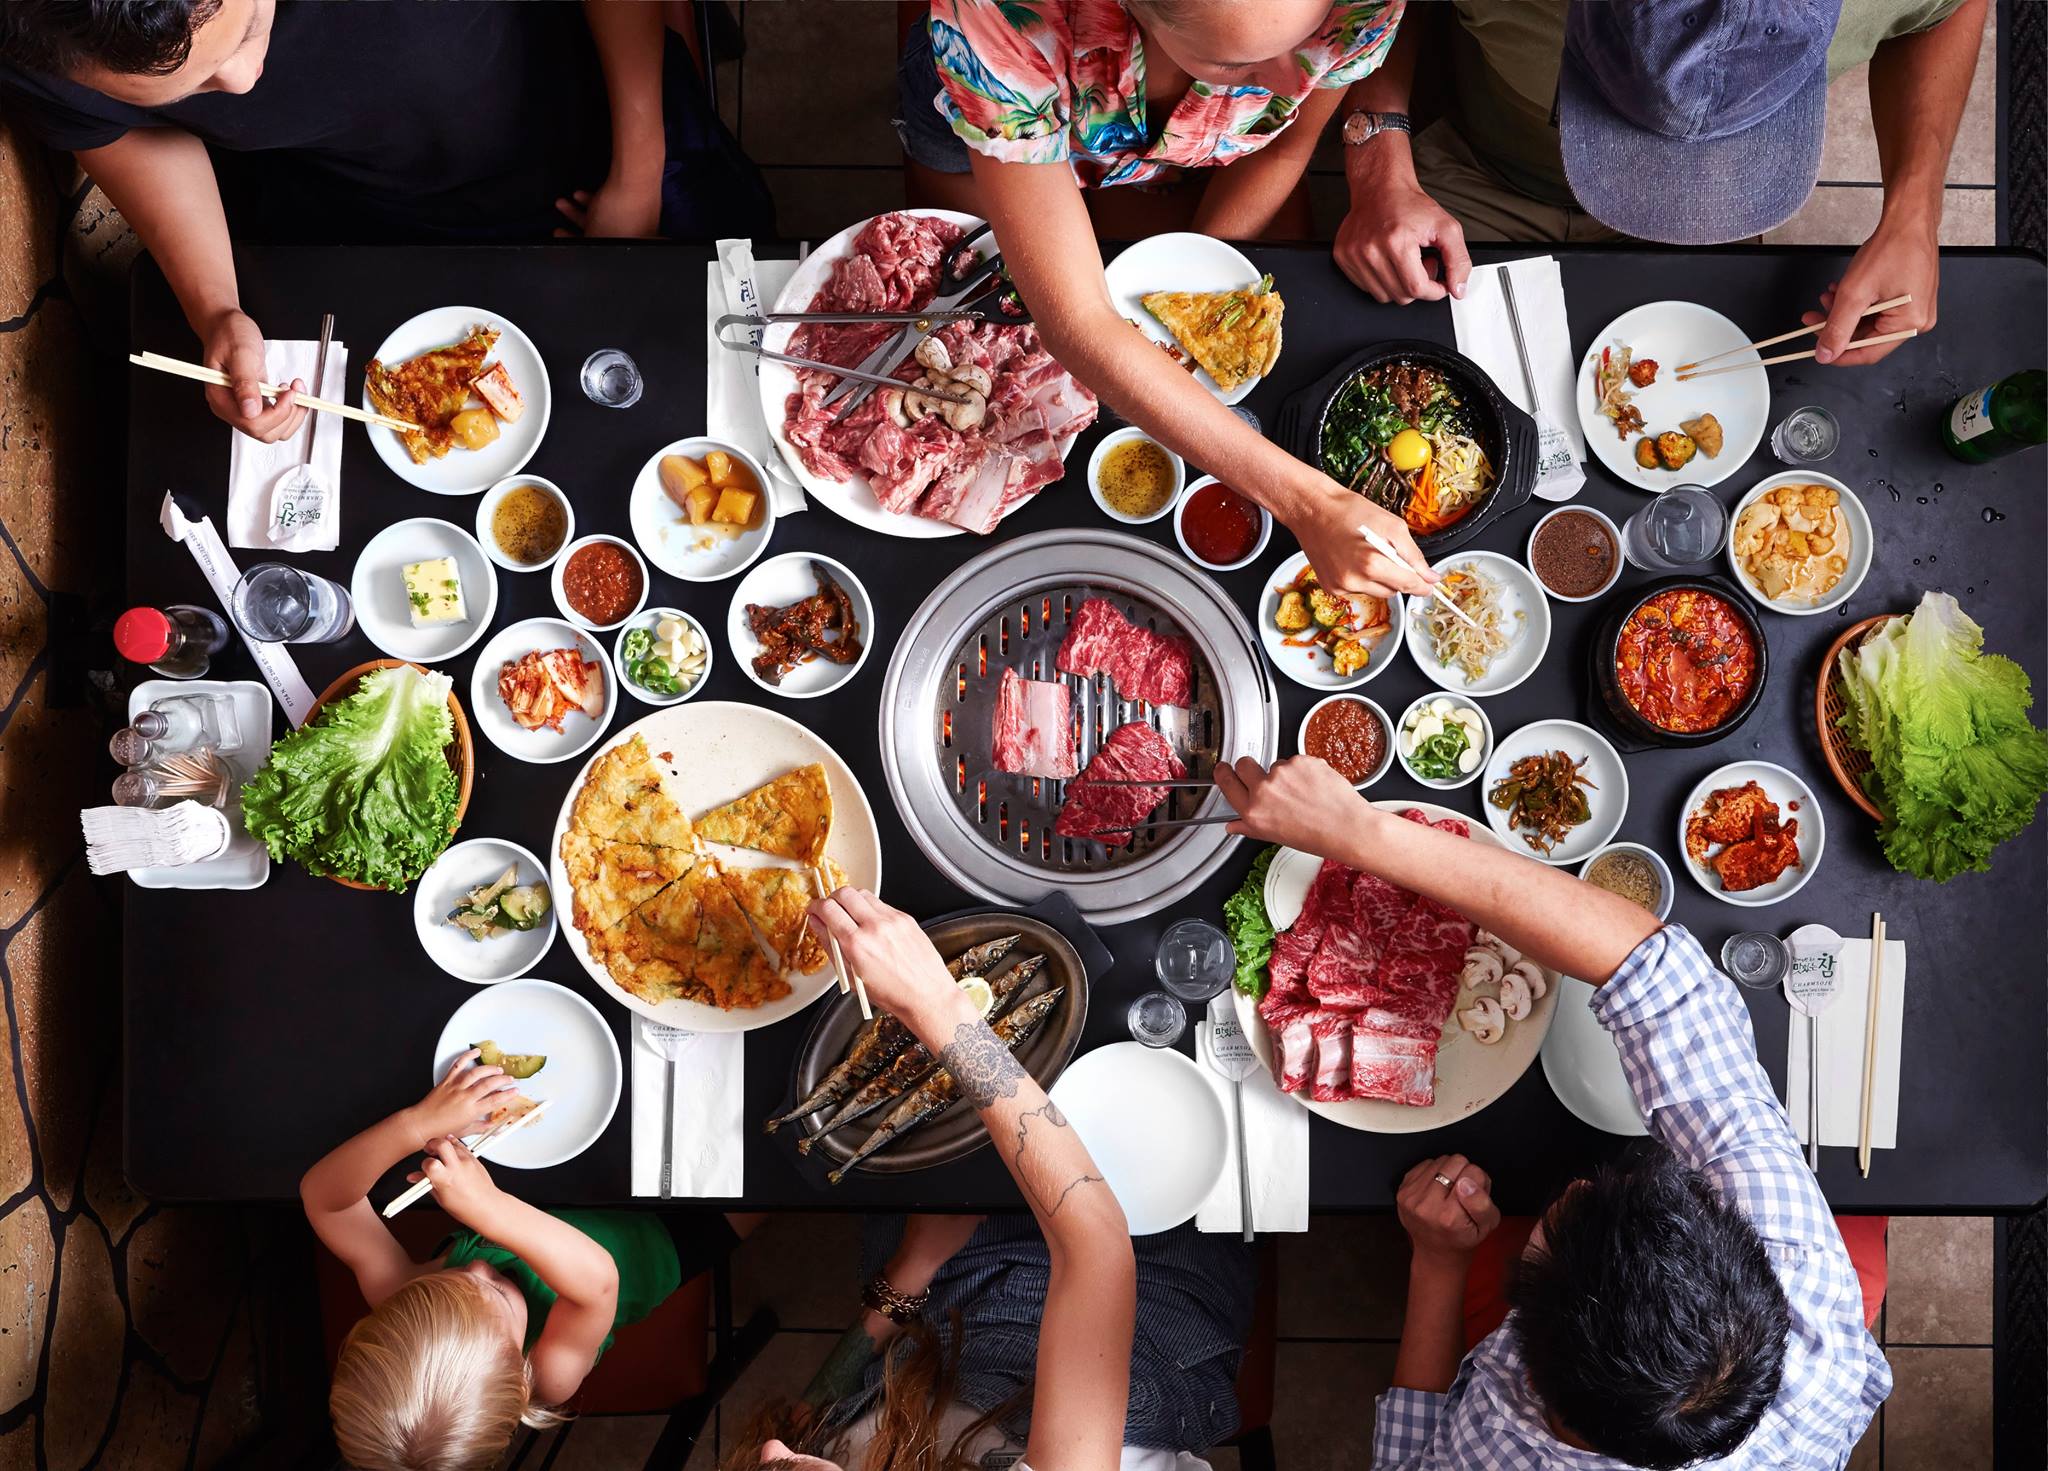 Разная культура питания. Корейская Трапеза. Корейская еда в ресторане. Корейский стол с едой. Стол с едой и людьми.